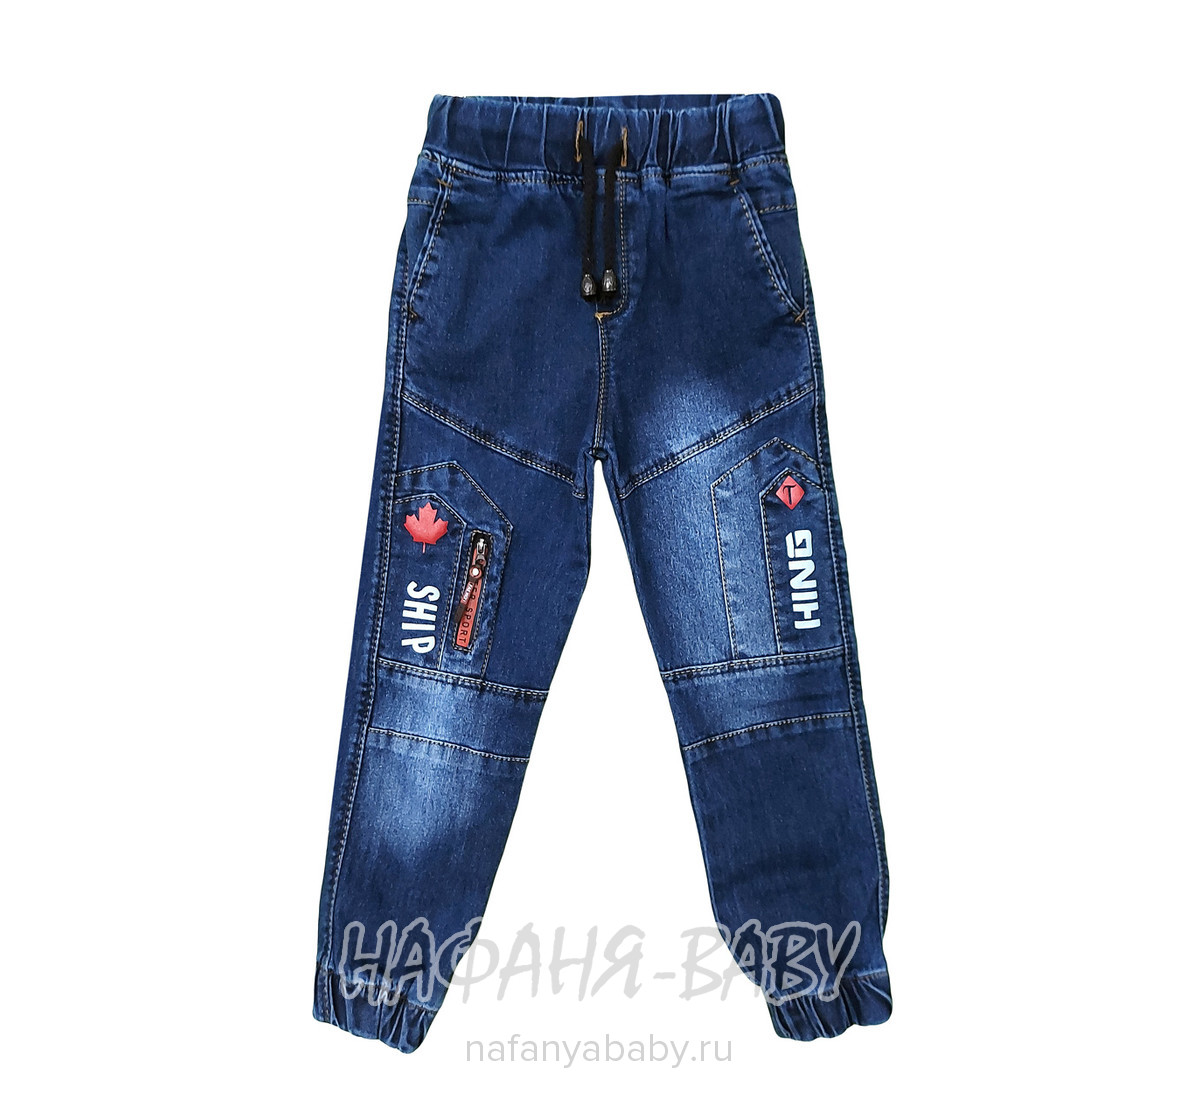 Подростковые джинсы TATI Jeans арт: 4466, 10-15 лет, 5-9 лет, оптом Турция